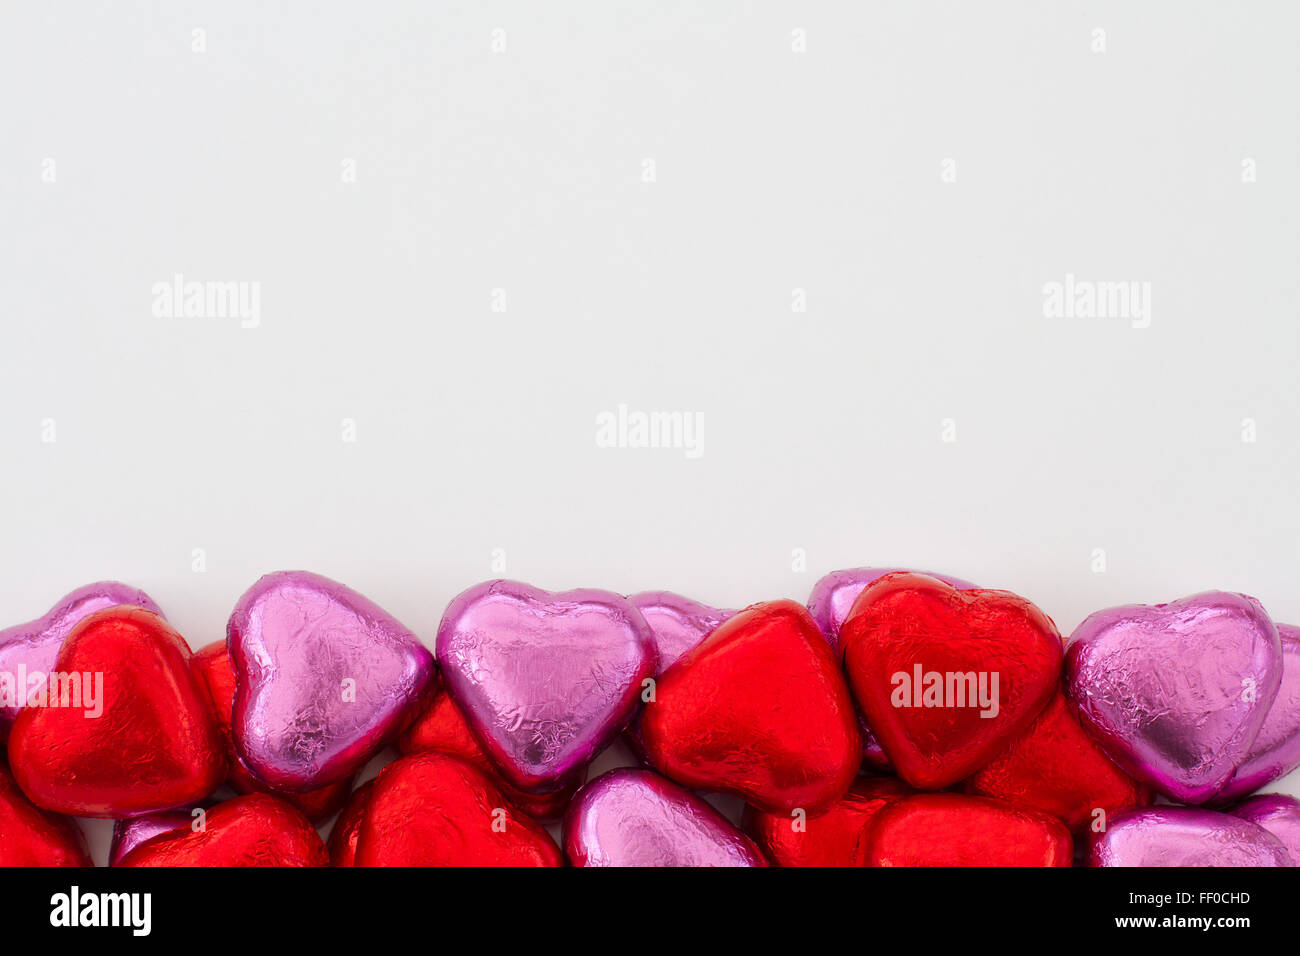 Chocolats en forme de coeur alignés sur le bord inférieur de l'image. Décoration valentine candy organisé dans la partie inférieure du cadre. Banque D'Images